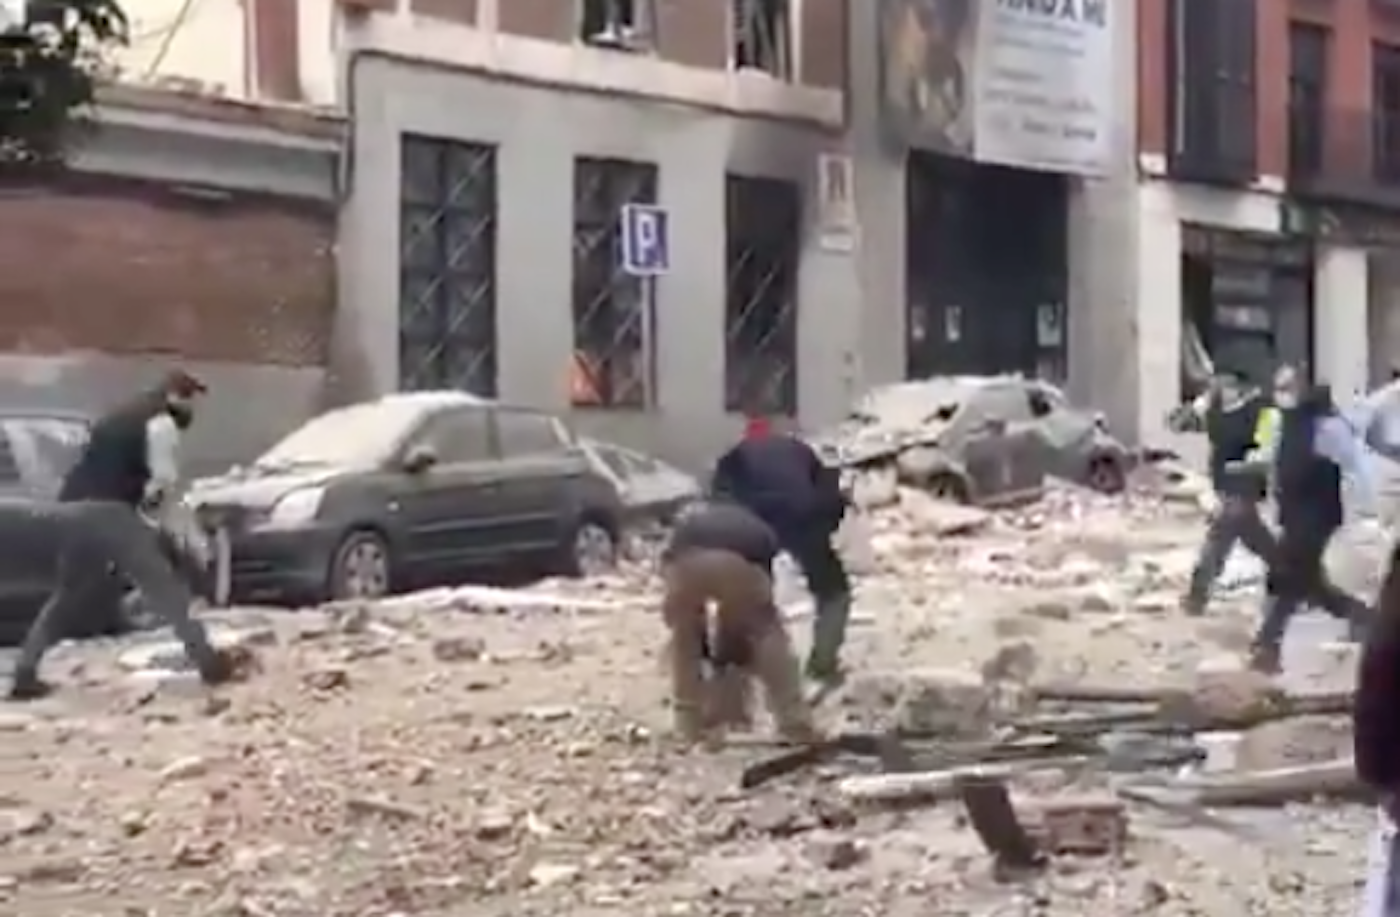 Vecinos de Madrid retirando escombros cerca del edificio que ha explotado en Puerta de Toledo. Twitter